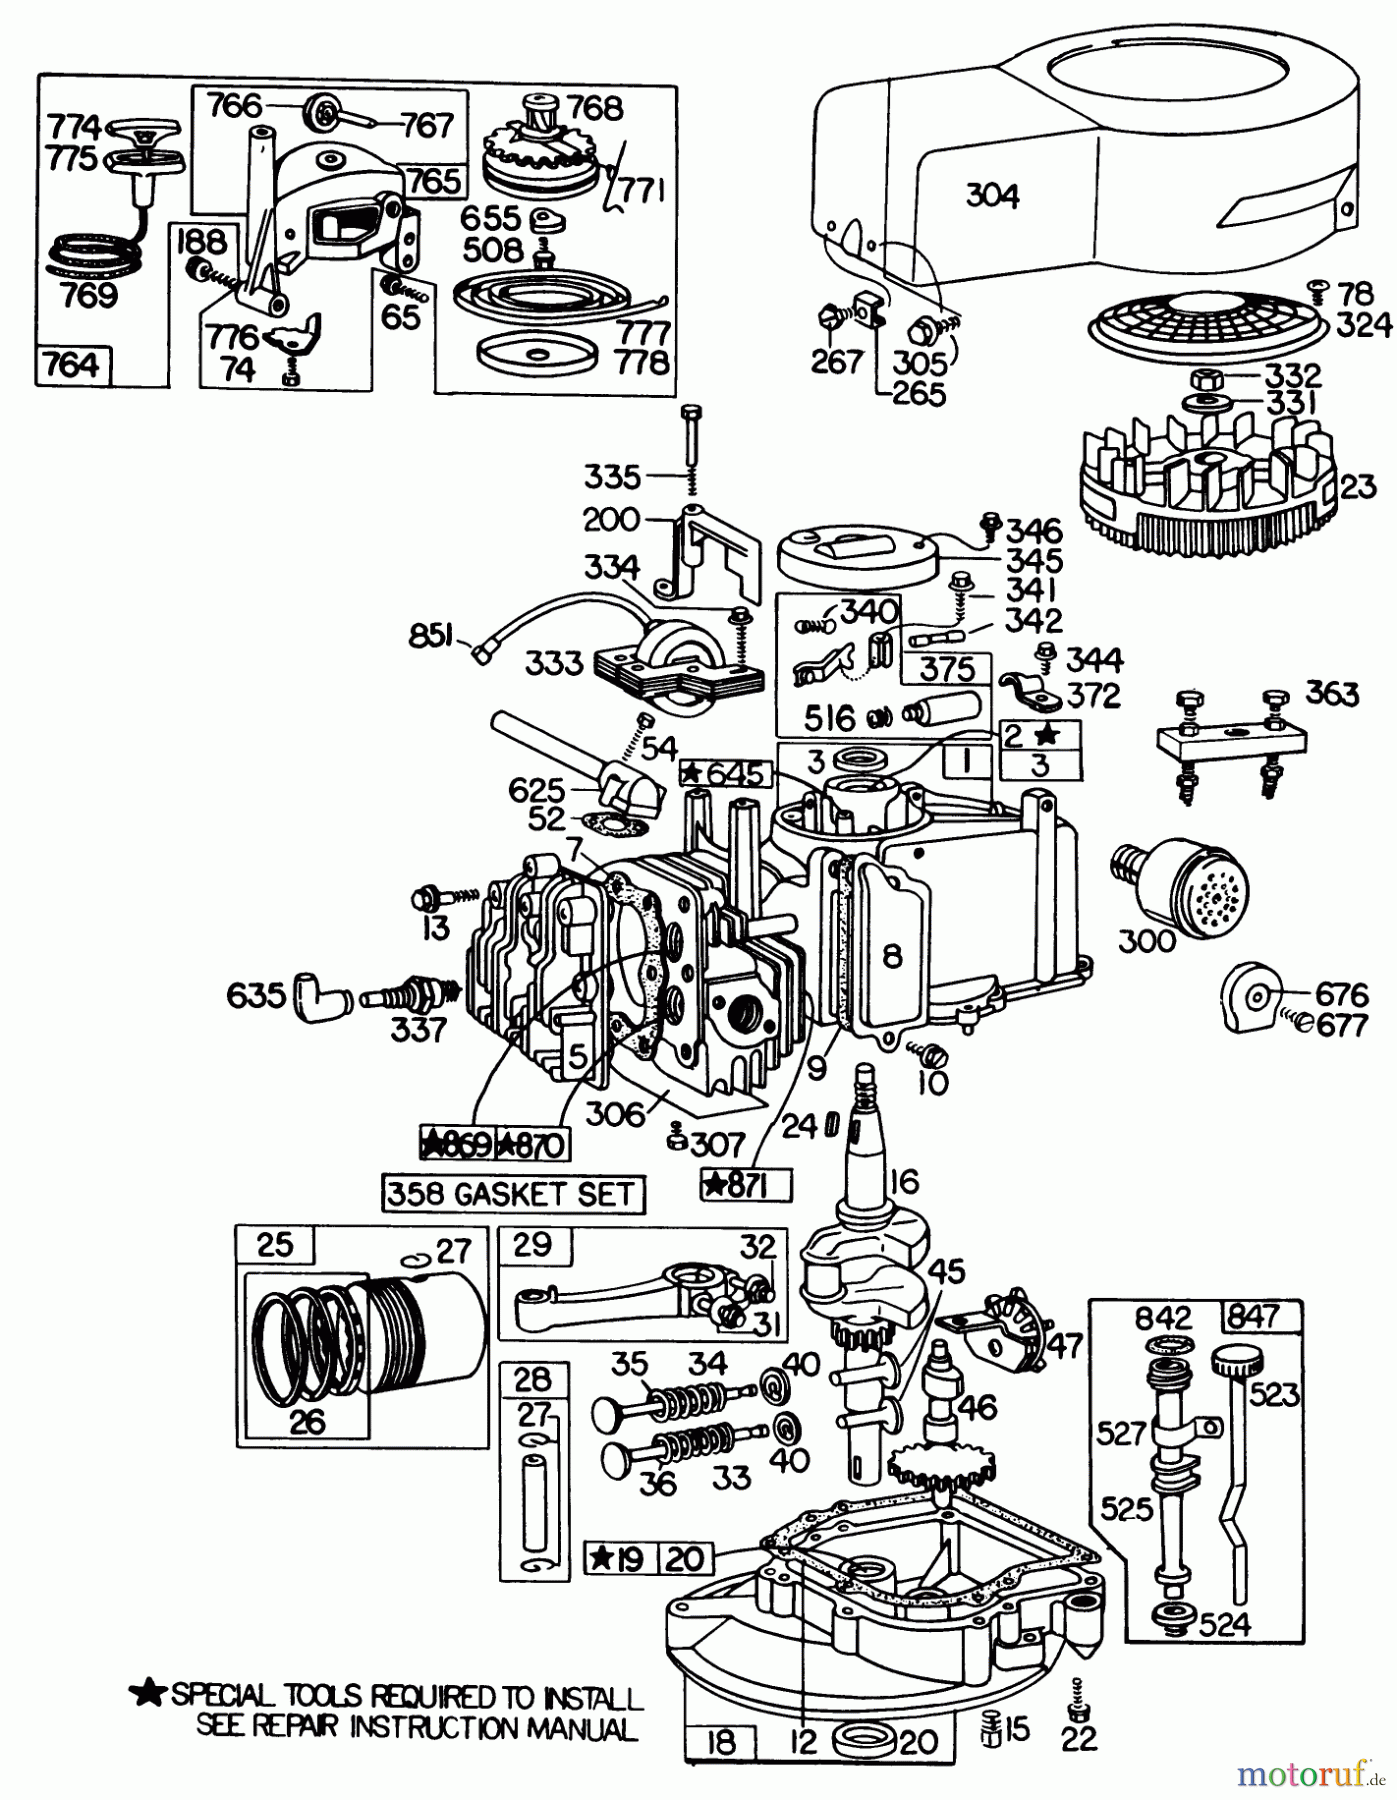  Toro Neu Mowers, Walk-Behind Seite 1 20735 - Toro Lawnmower, 1980 (0000001-0999999) ENGINE BRIGGS & STRATTON MODEL NO. 110908-0380-03